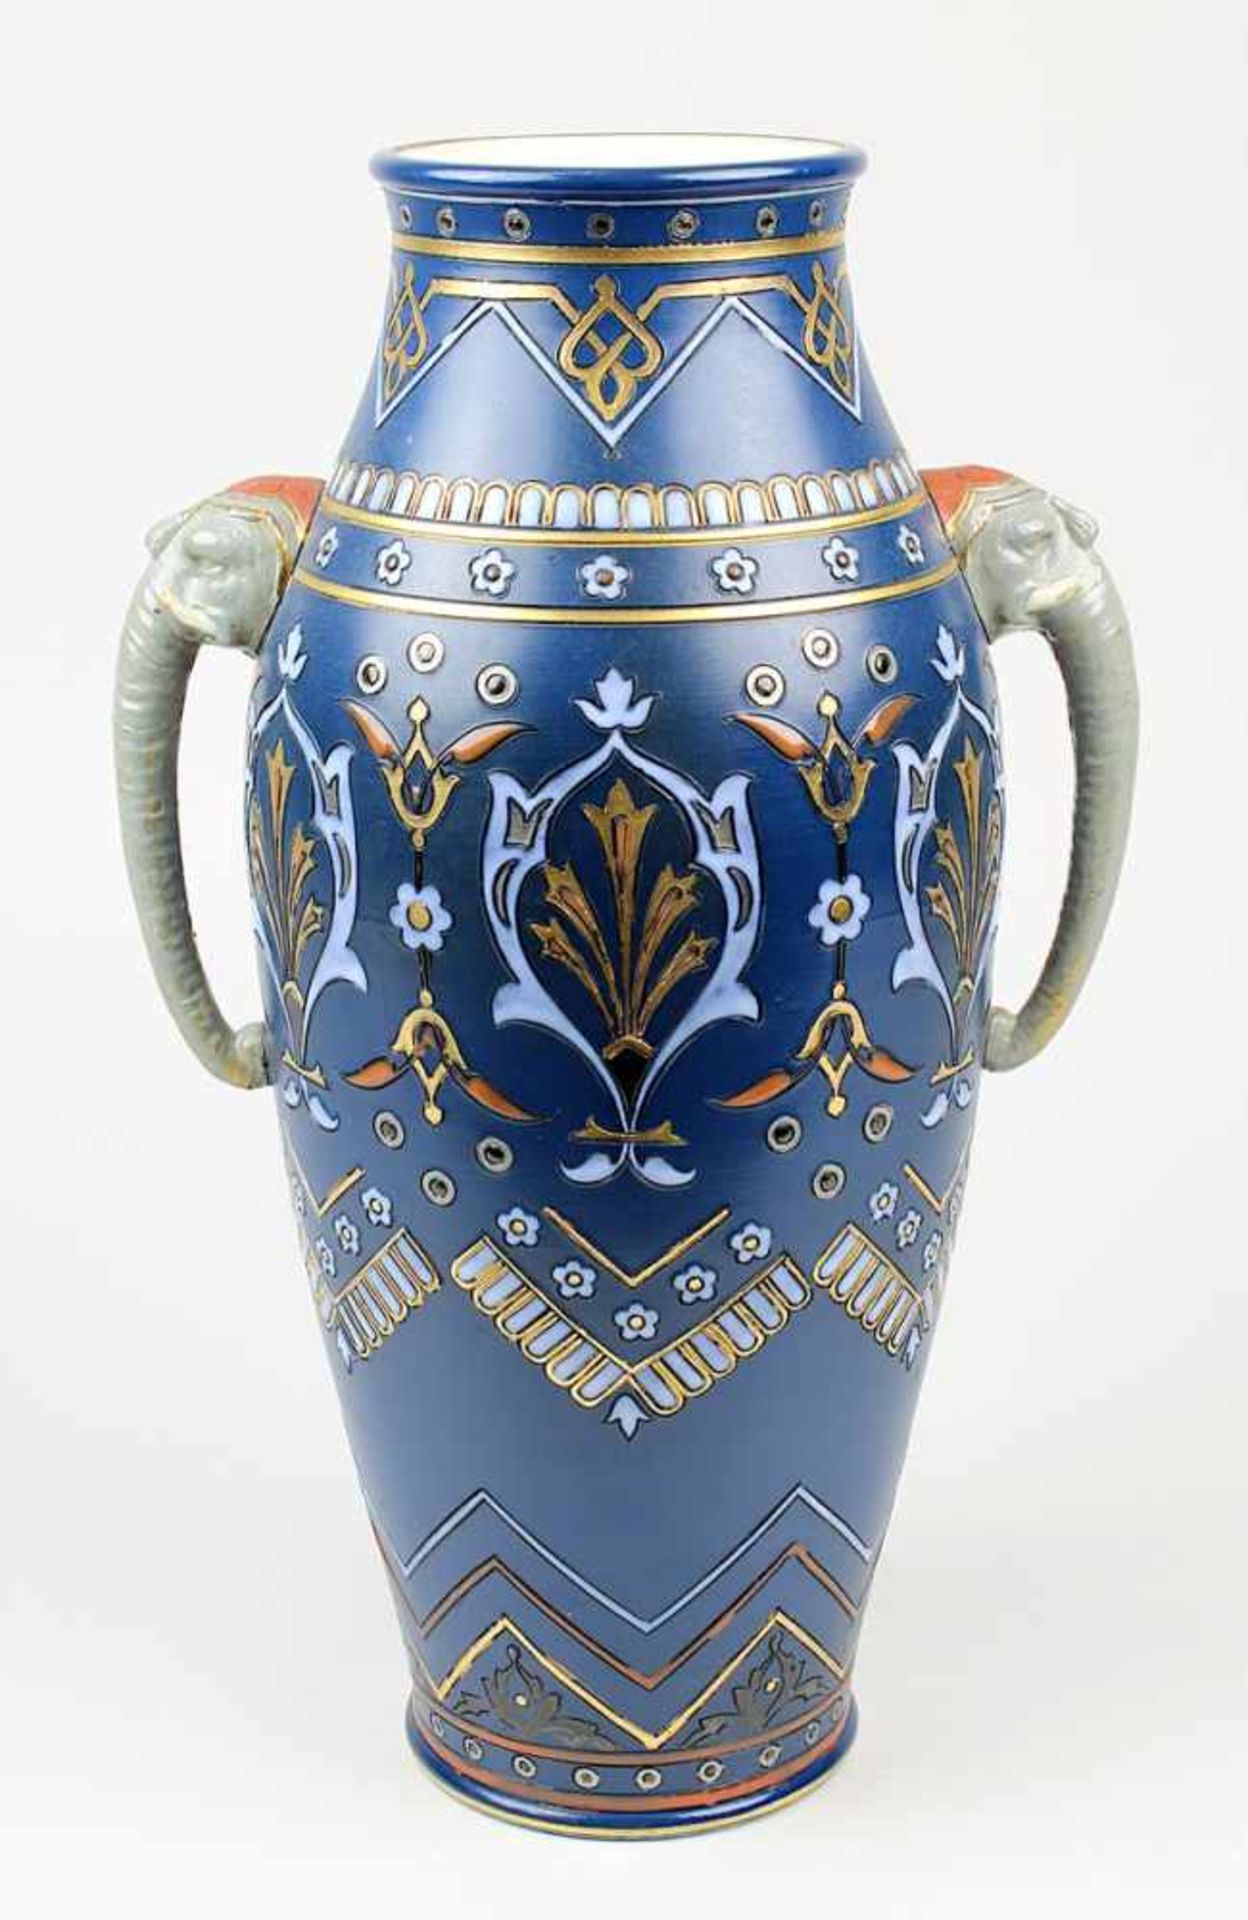 Villeroy & Boch Chromolith-Elefantenvase, länglicher Vasenkörper mit in Ritztechnik gearbeitetem